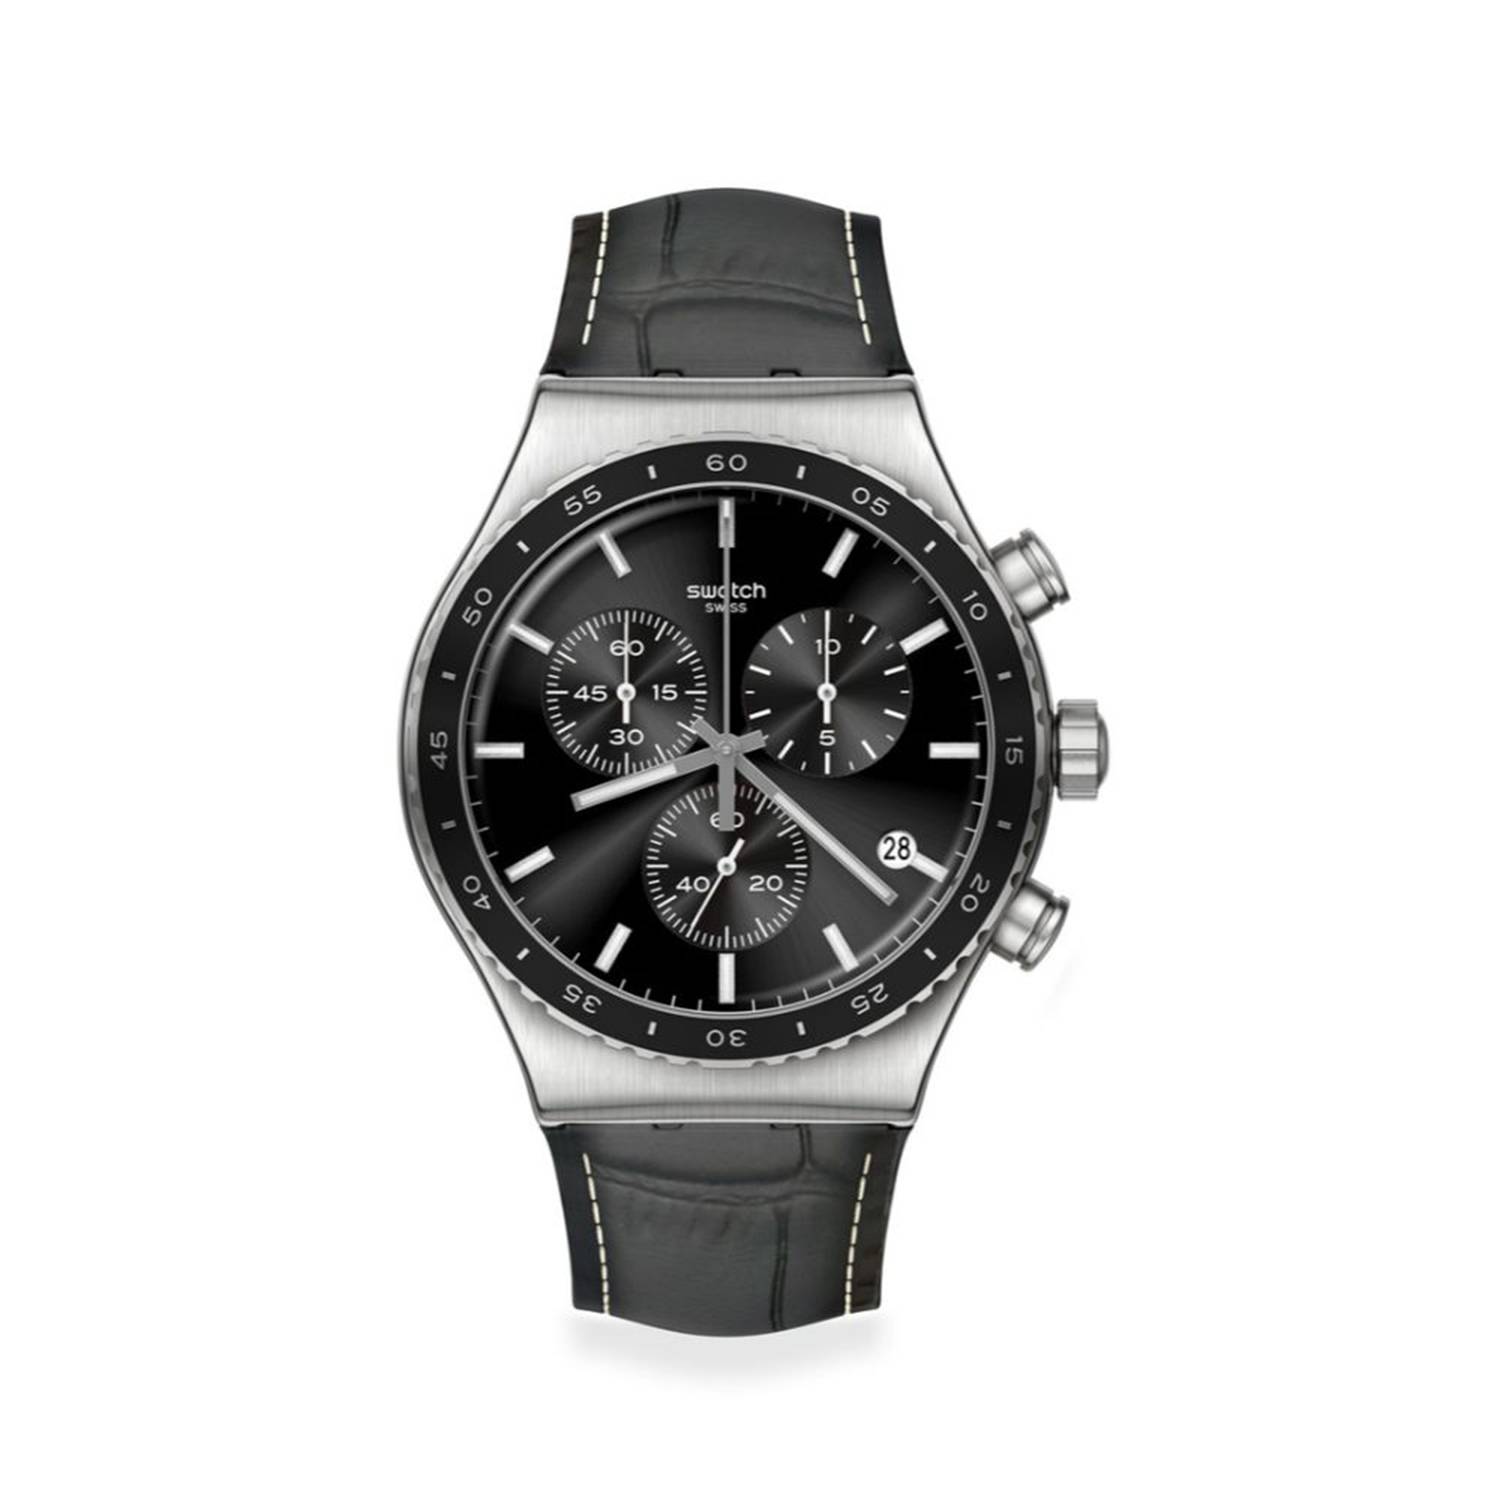 Lo Quiero Comprar - Reloj Swatch Hombre GB117 - Promo $310.000 WhatsApp 311  5379332   #TimeShopColombia #Relojería #RelojesColombia #Swatch #Original  #SwatchHombre #Promo #Marzo